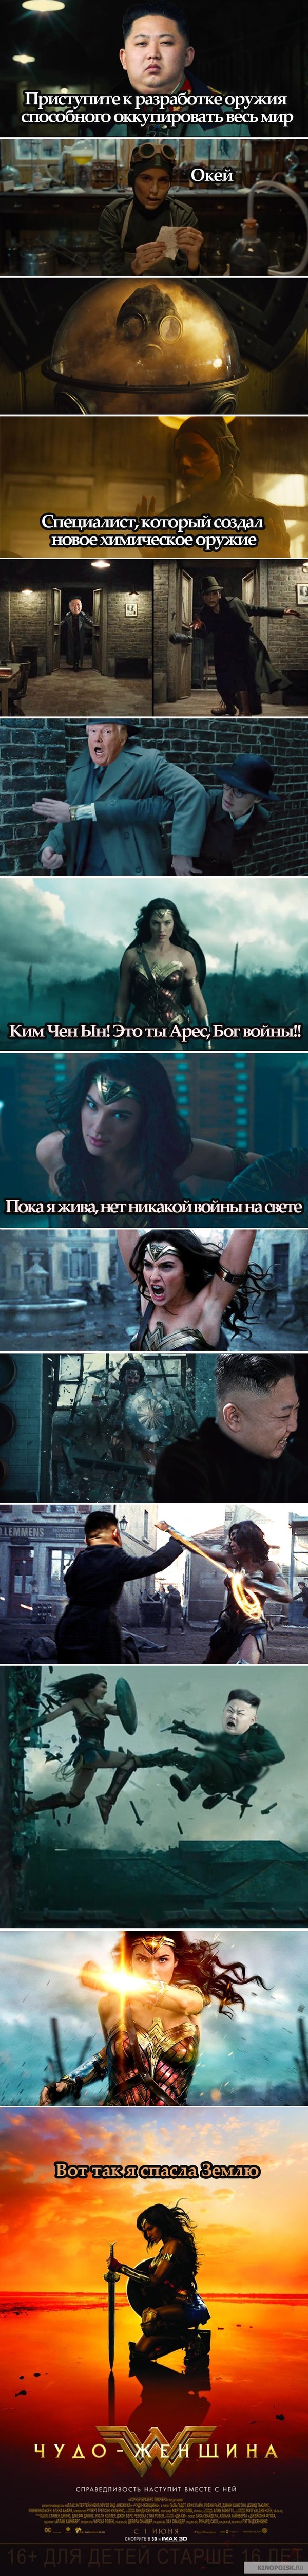 Parody: Wonder Woman vs. Ares - Parody, Politics, Wonder Woman, Ares, Movies, Justice, Longpost